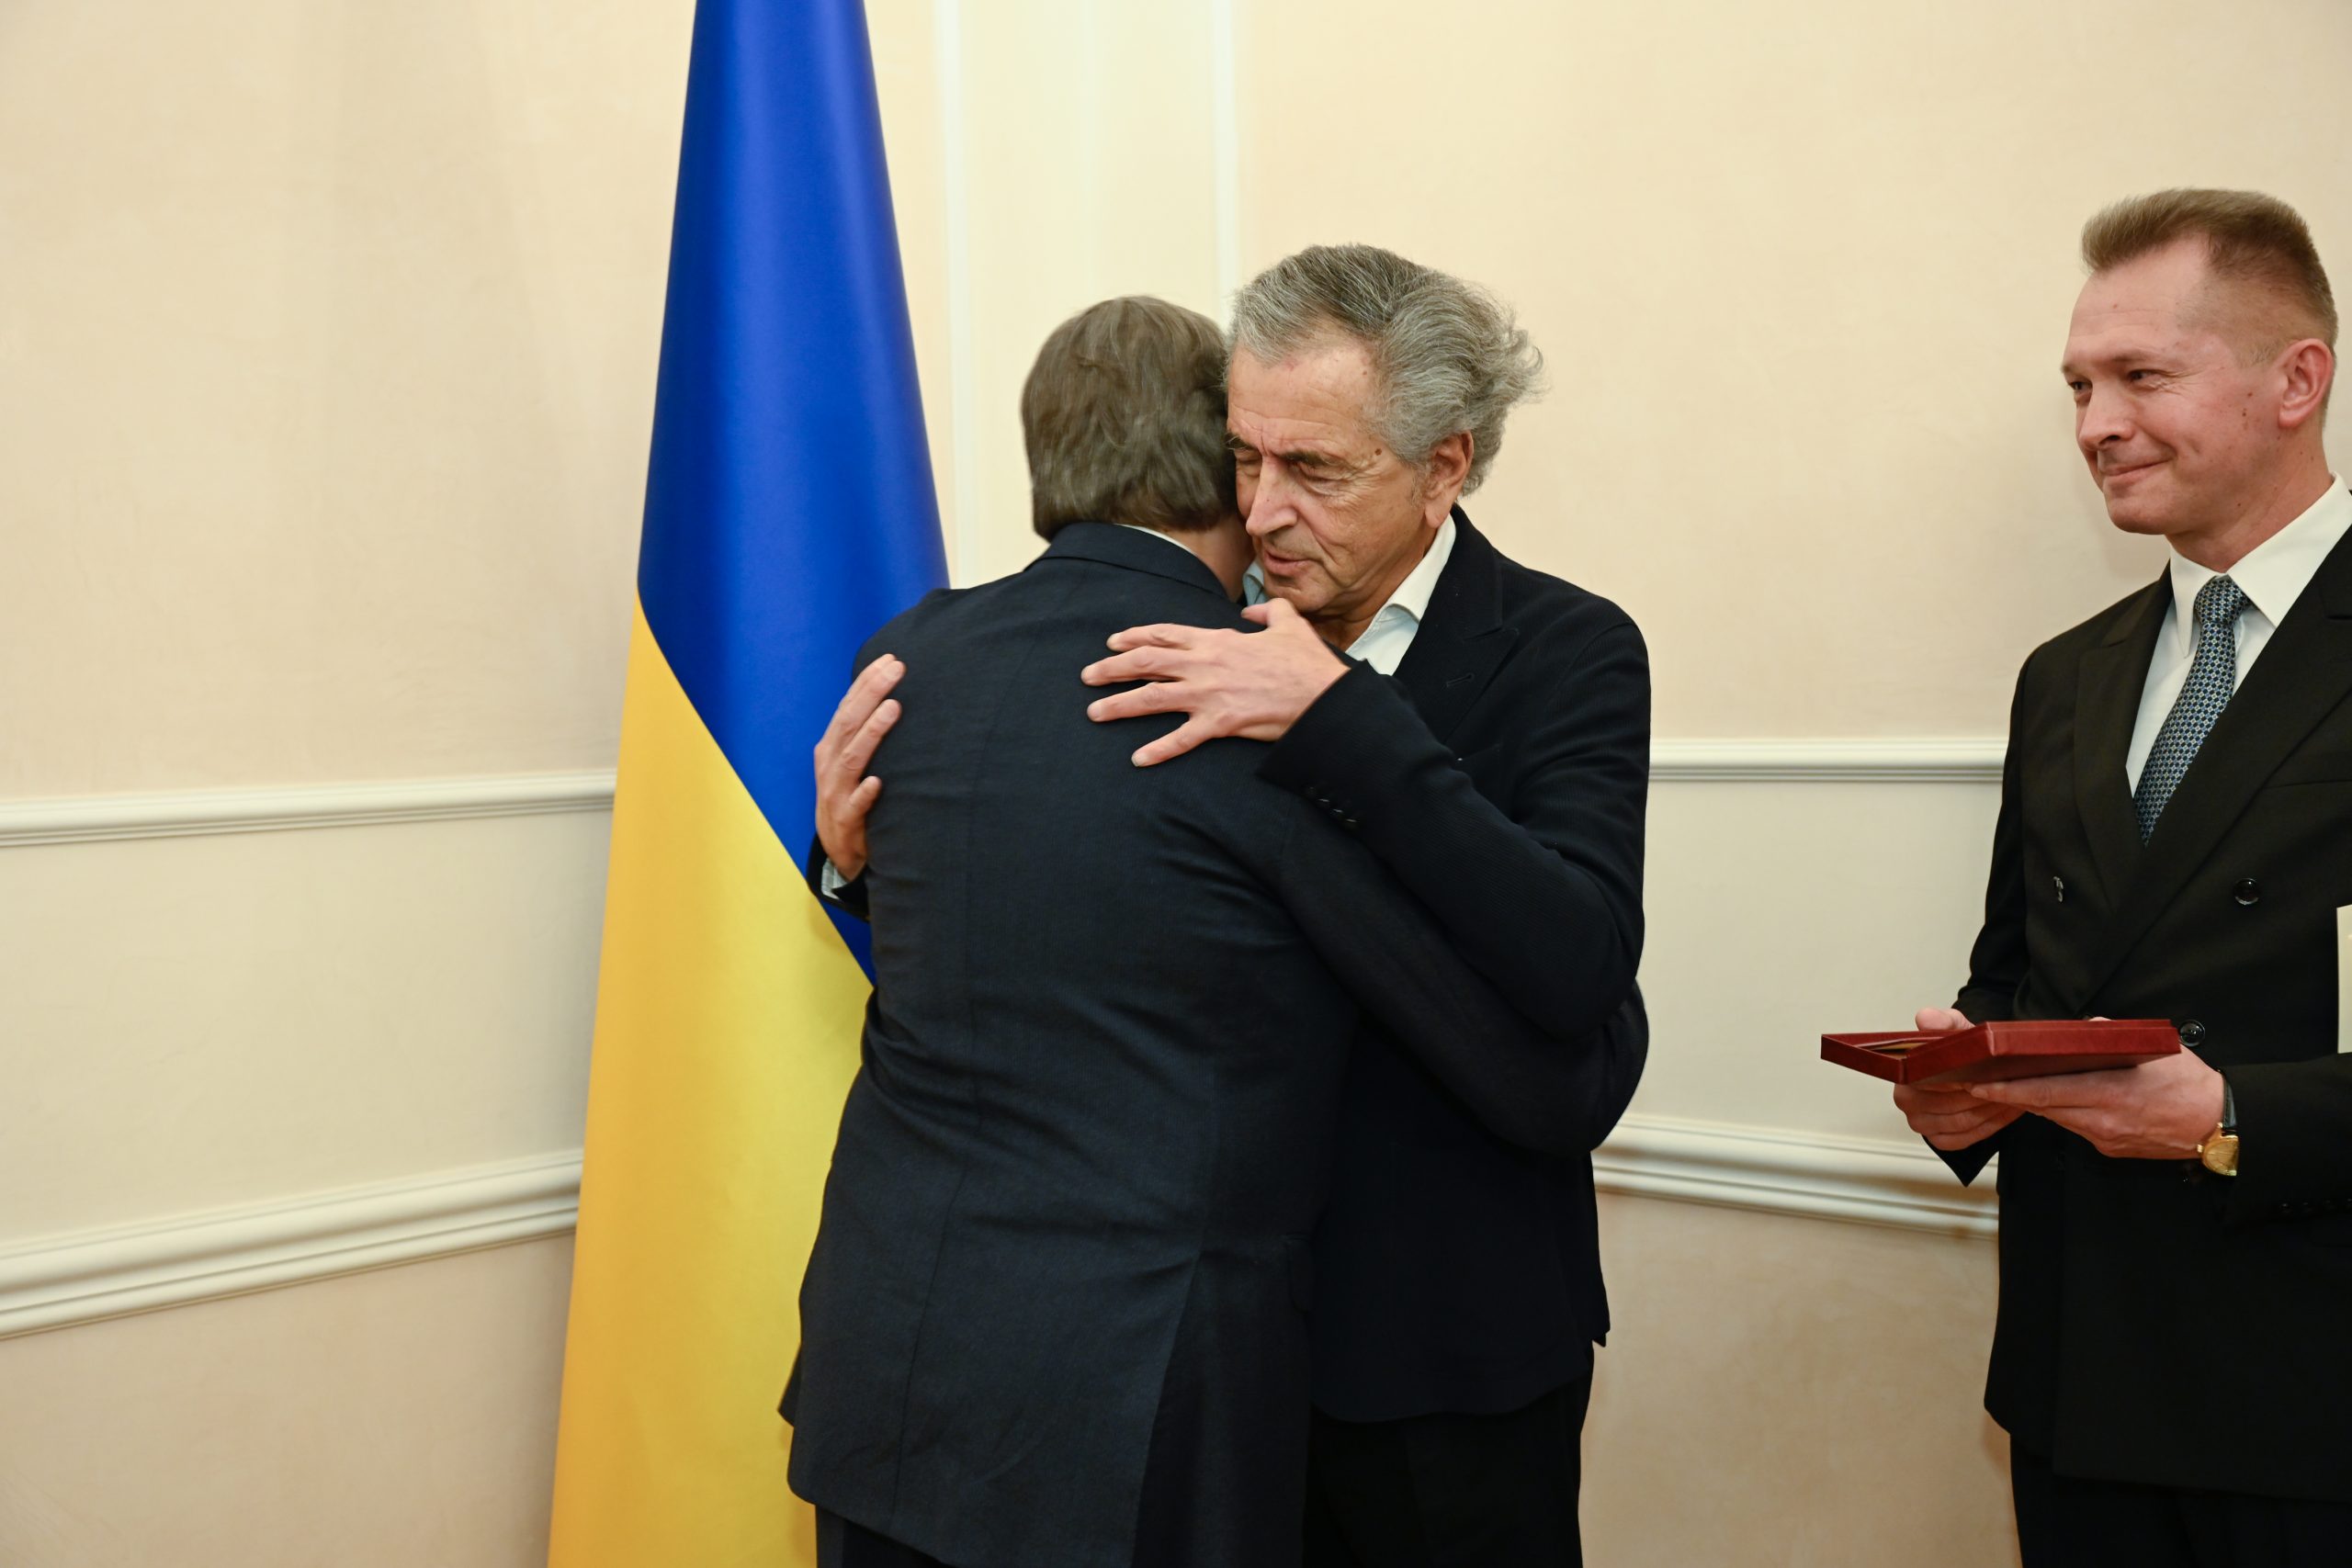 Vadym Omelchenko, ambassadeur d'Ukraine en France, remet l'insigne de Chevalier de l'Ordre du Mérite d'Ukraine à Bernard-Henri Lévy. Ils se prennent dans les bras devant un drapeau ukrainien.